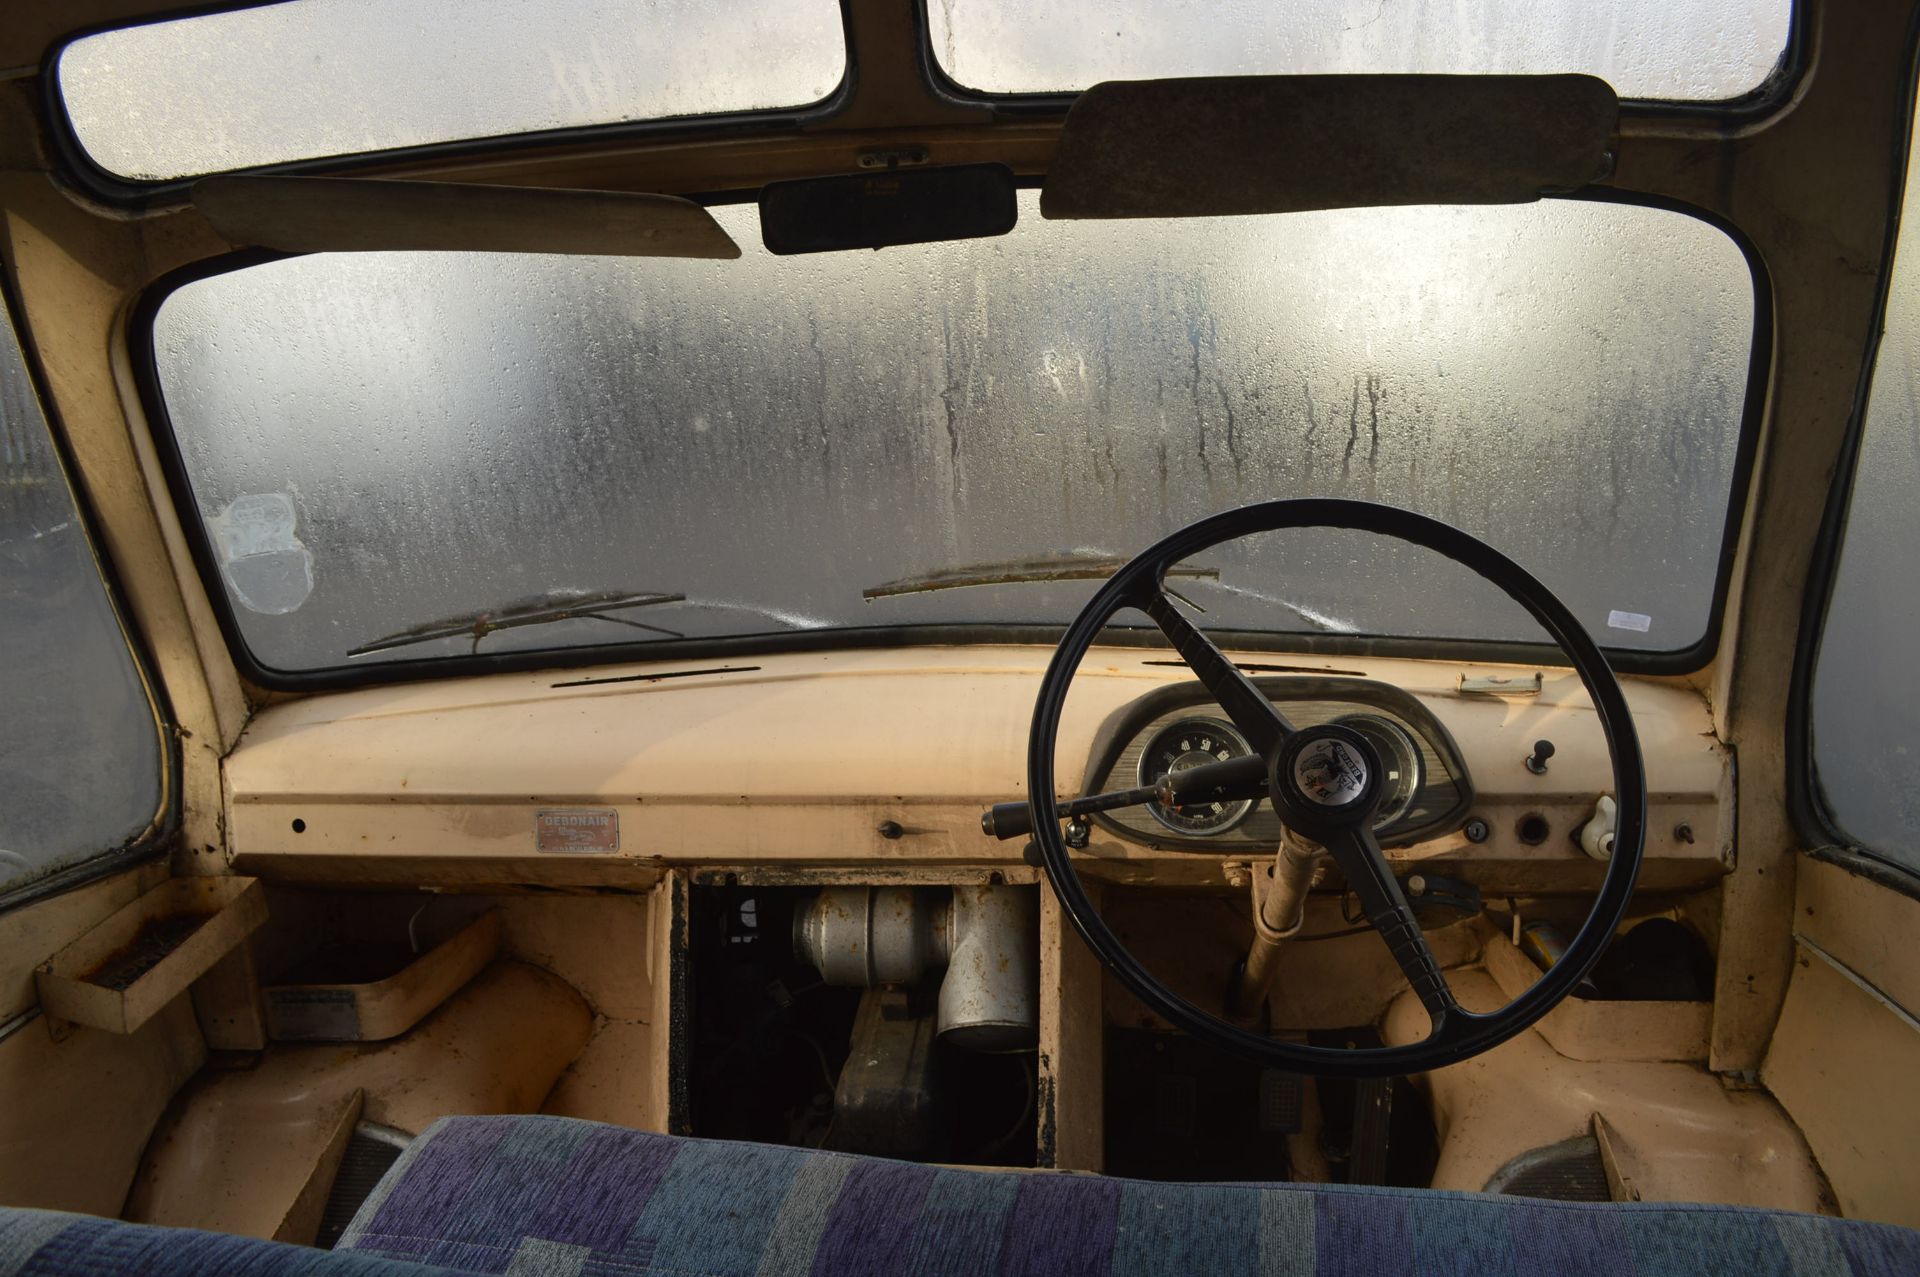 Bedford Dormobile “Debonair” 1965 - Image 4 of 7